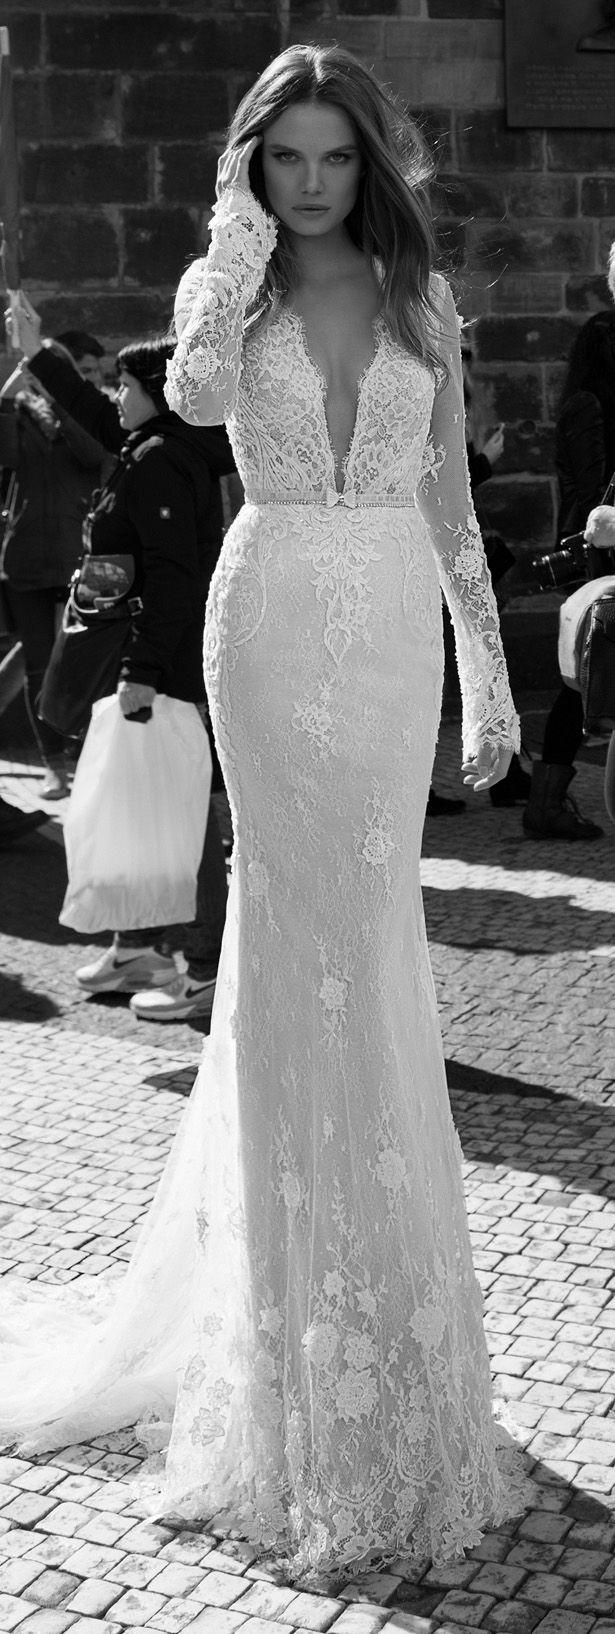 Wedding - Wedding Dress By Berta Bridal Fall 2015